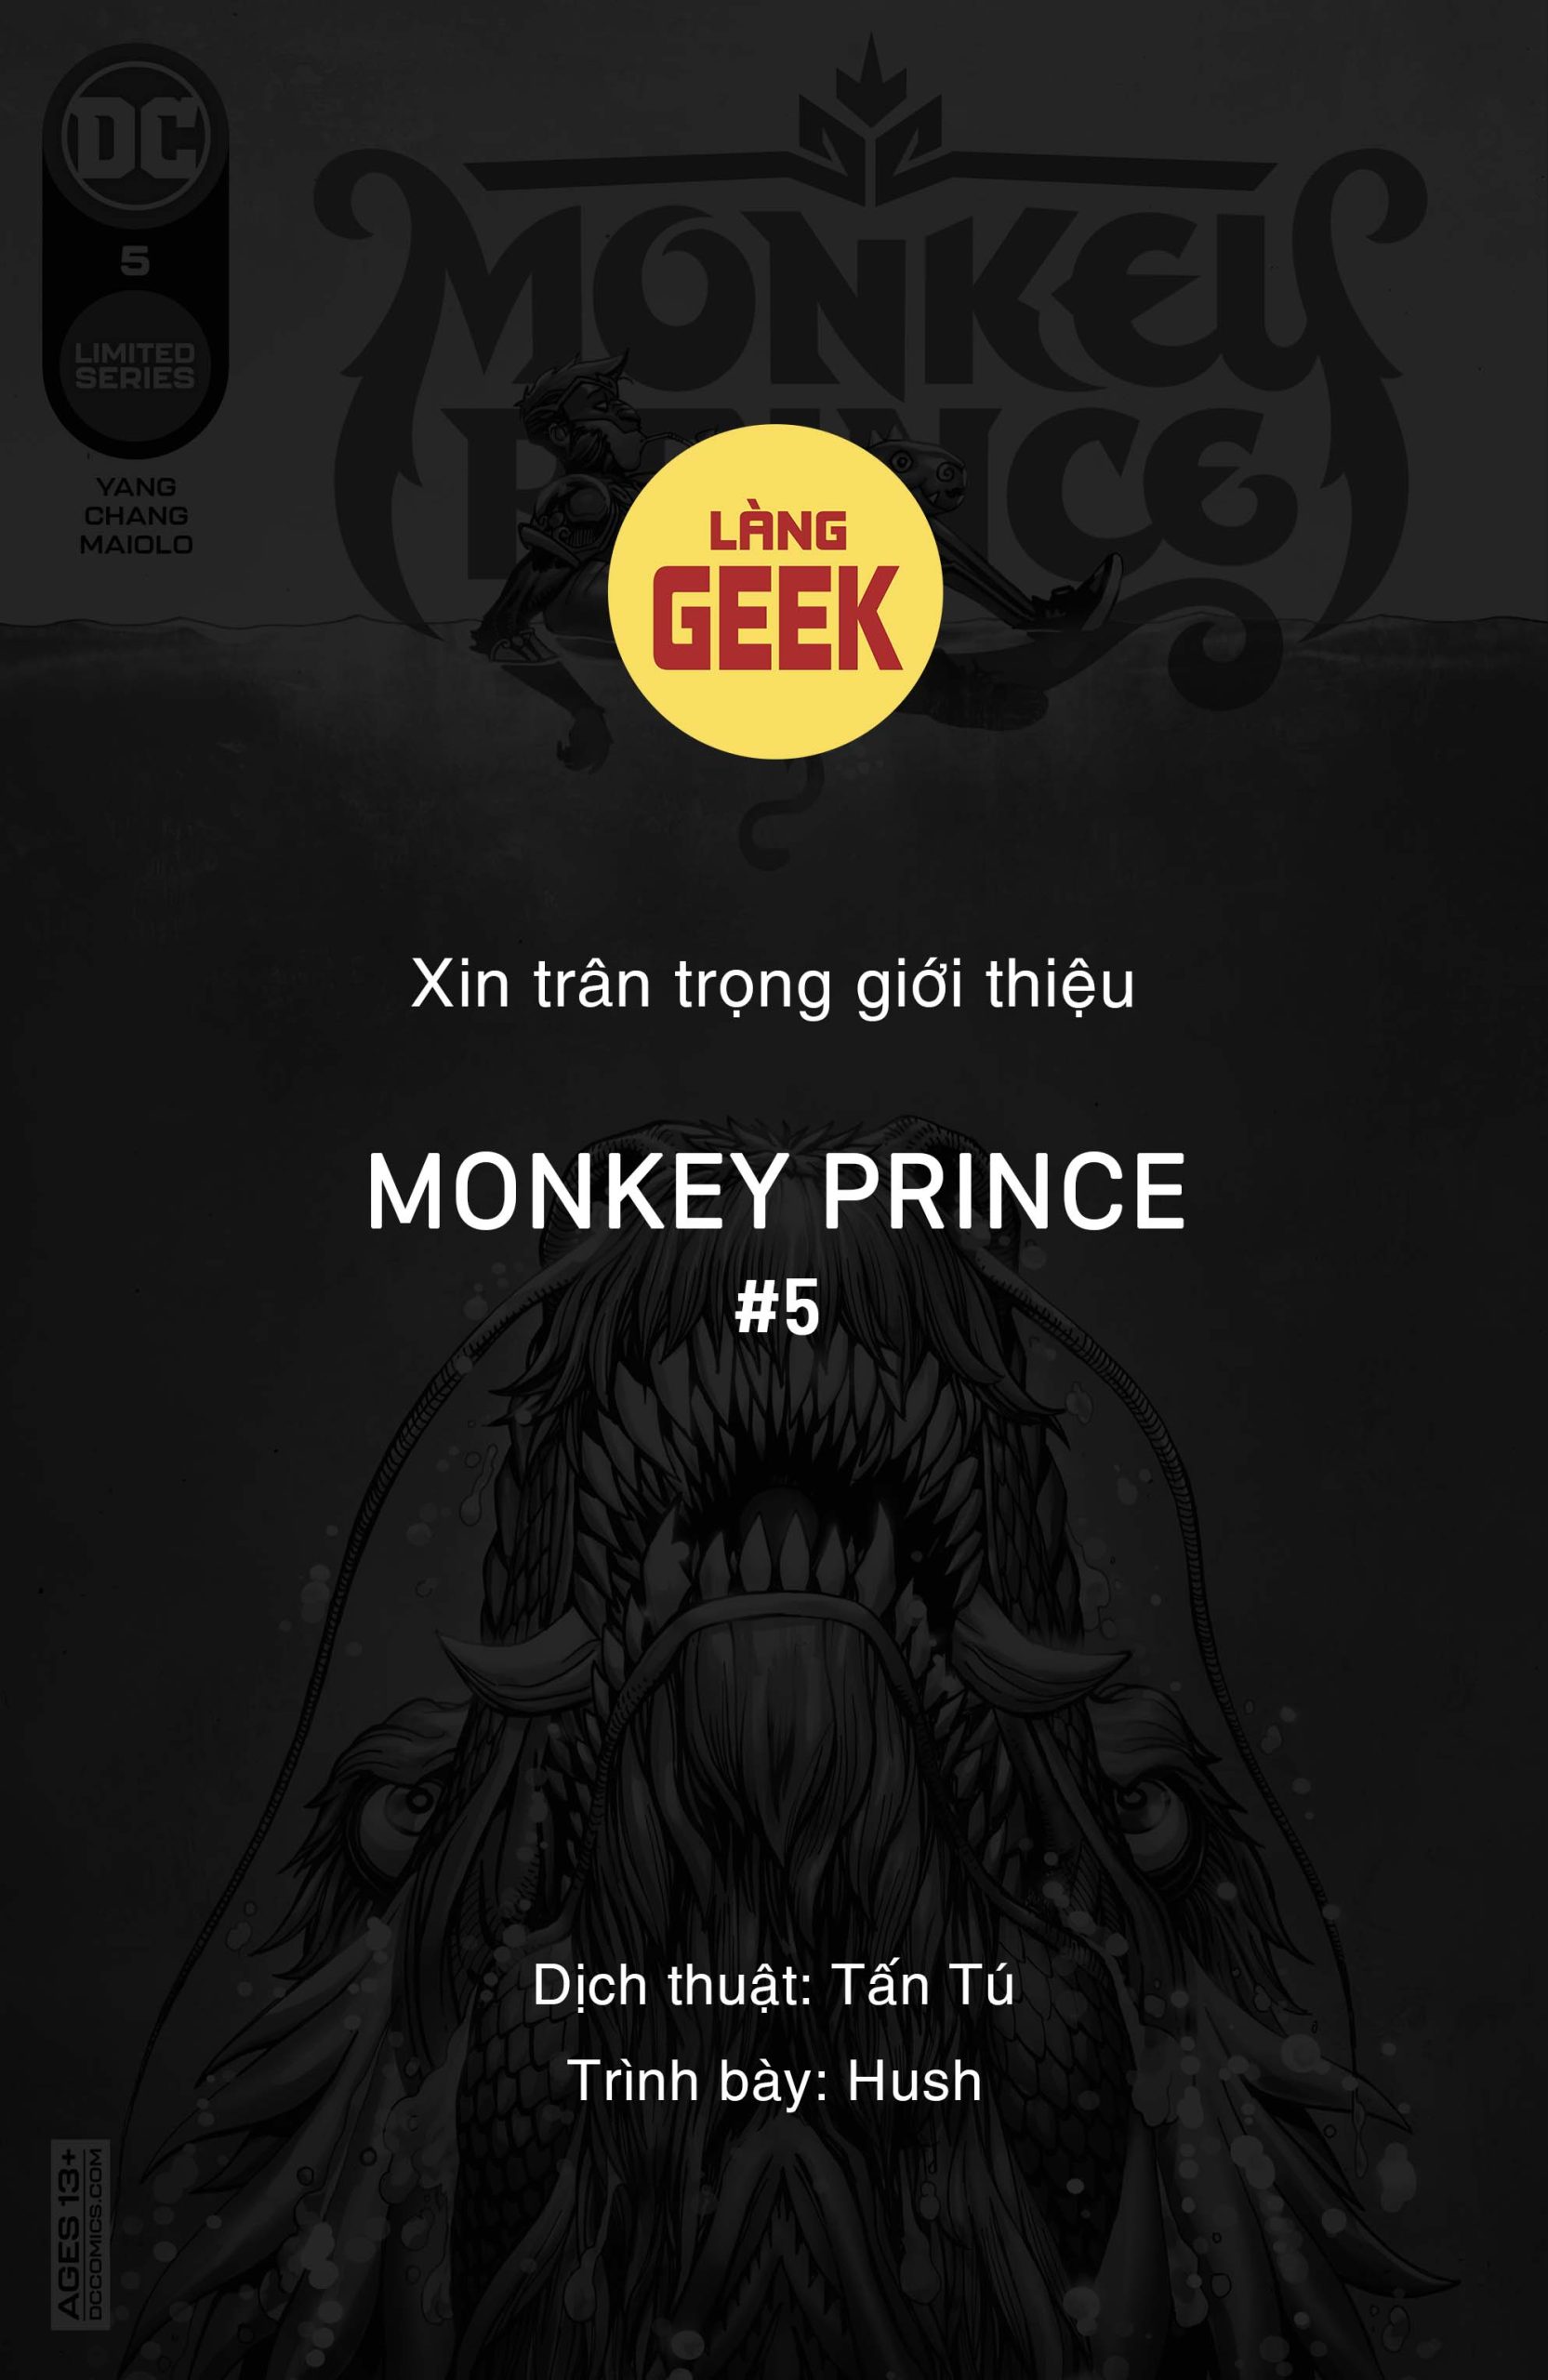 https://langgeek.net/wp-content/webpc-passthru.php?src=https://langgeek.net/wp-content/uploads/2023/04/Monkey-Prince-2022-005-000-1-scaled.jpg&nocache=1